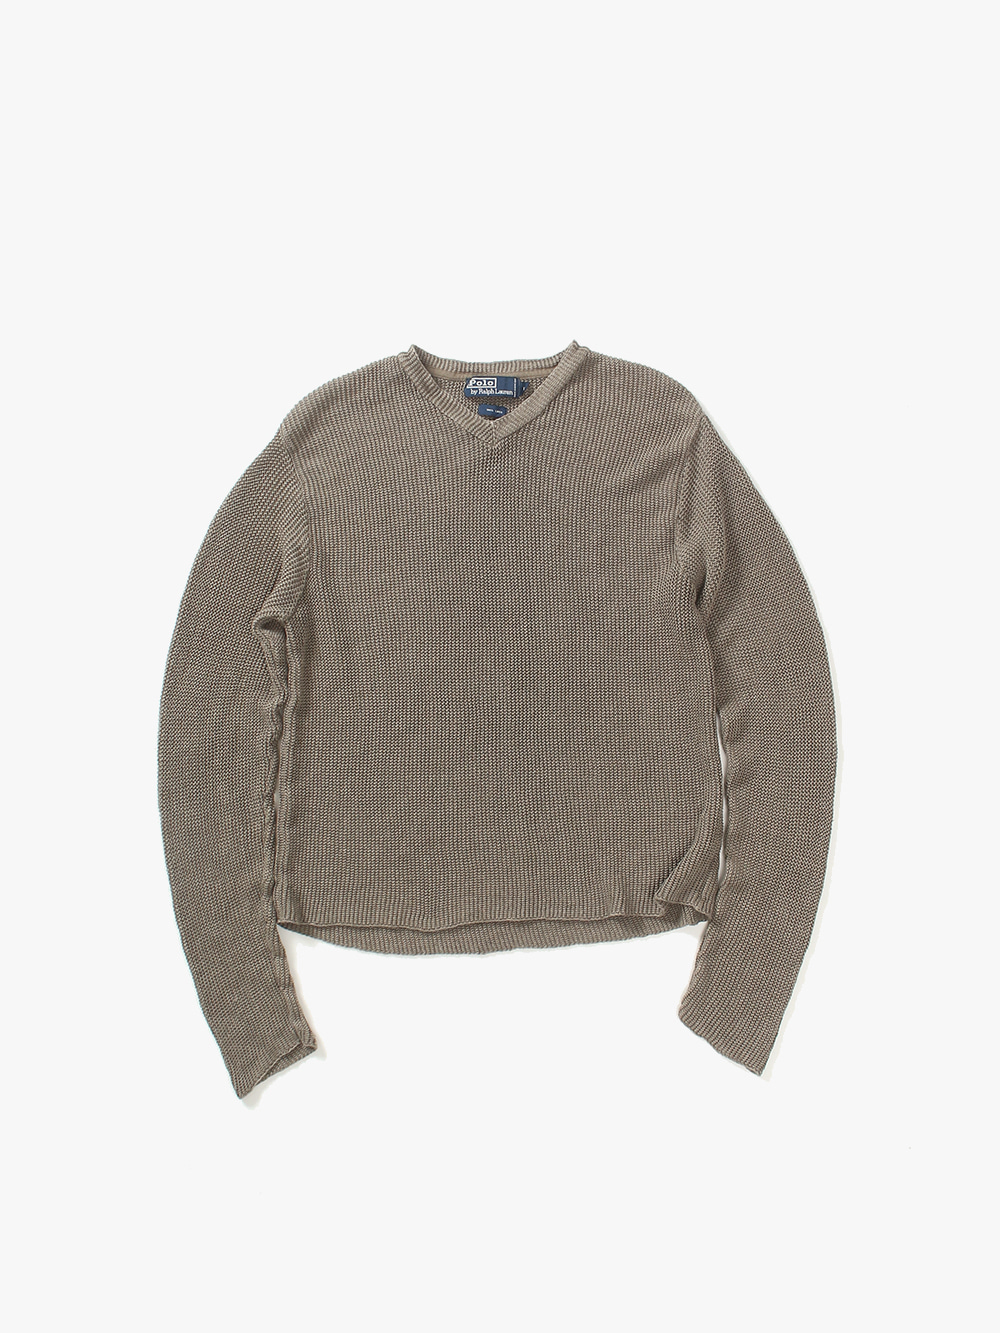 [ L ] Polo Ralph Lauren Sweater (6394)